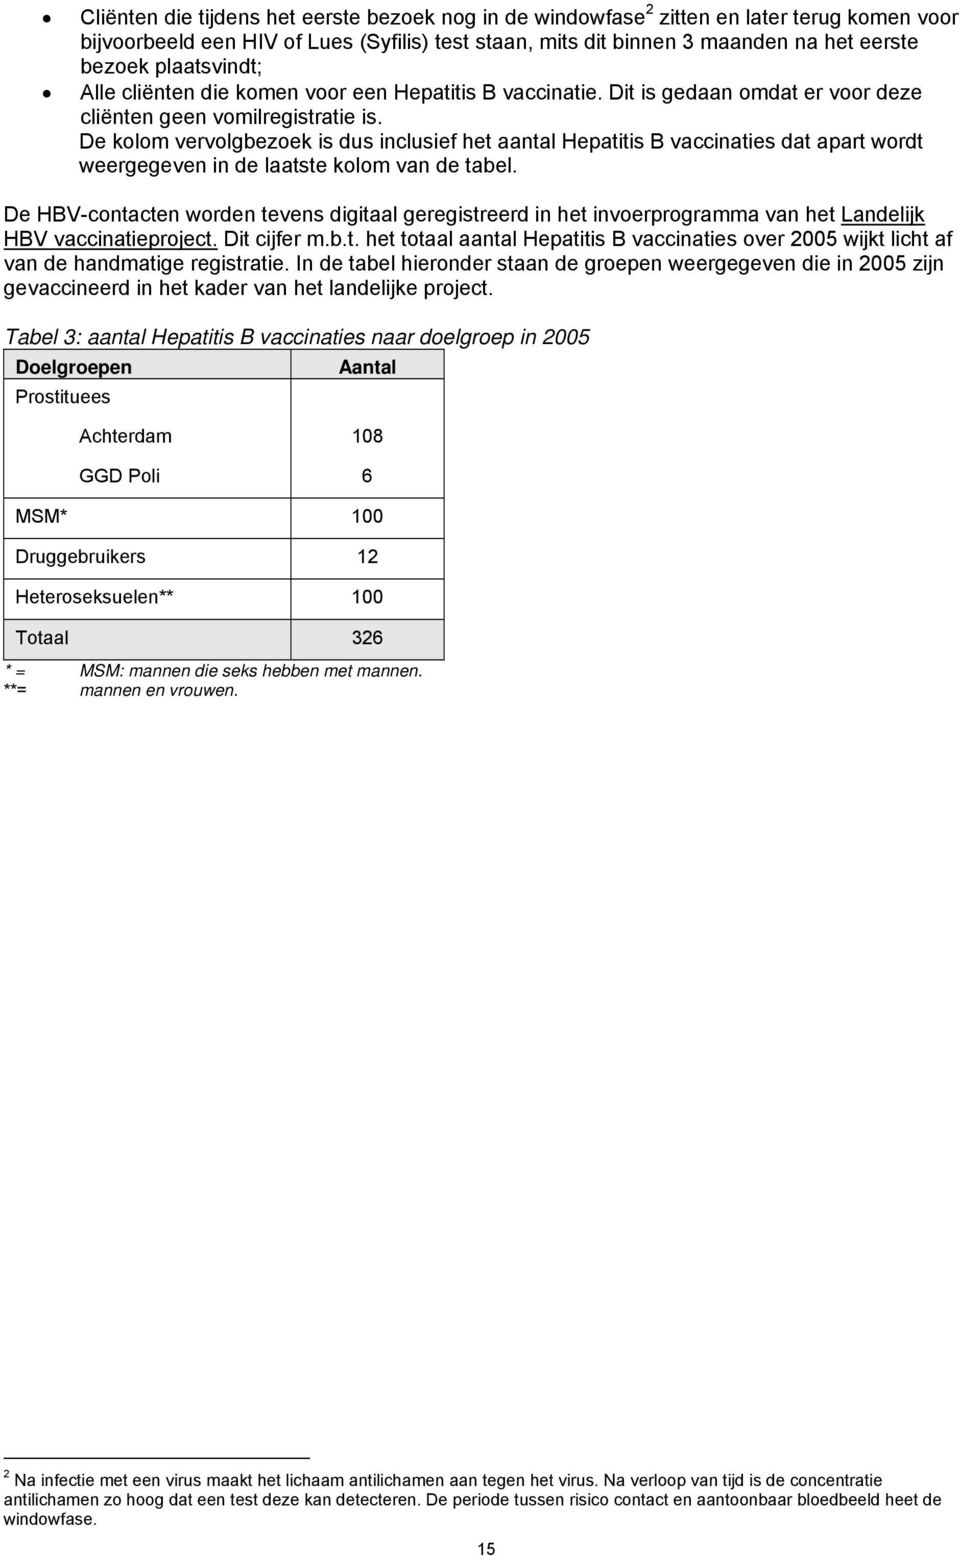 De kolom vervolgbezoek is dus inclusief het aantal Hepatitis B vaccinaties dat apart wordt weergegeven in de laatste kolom van de tabel.